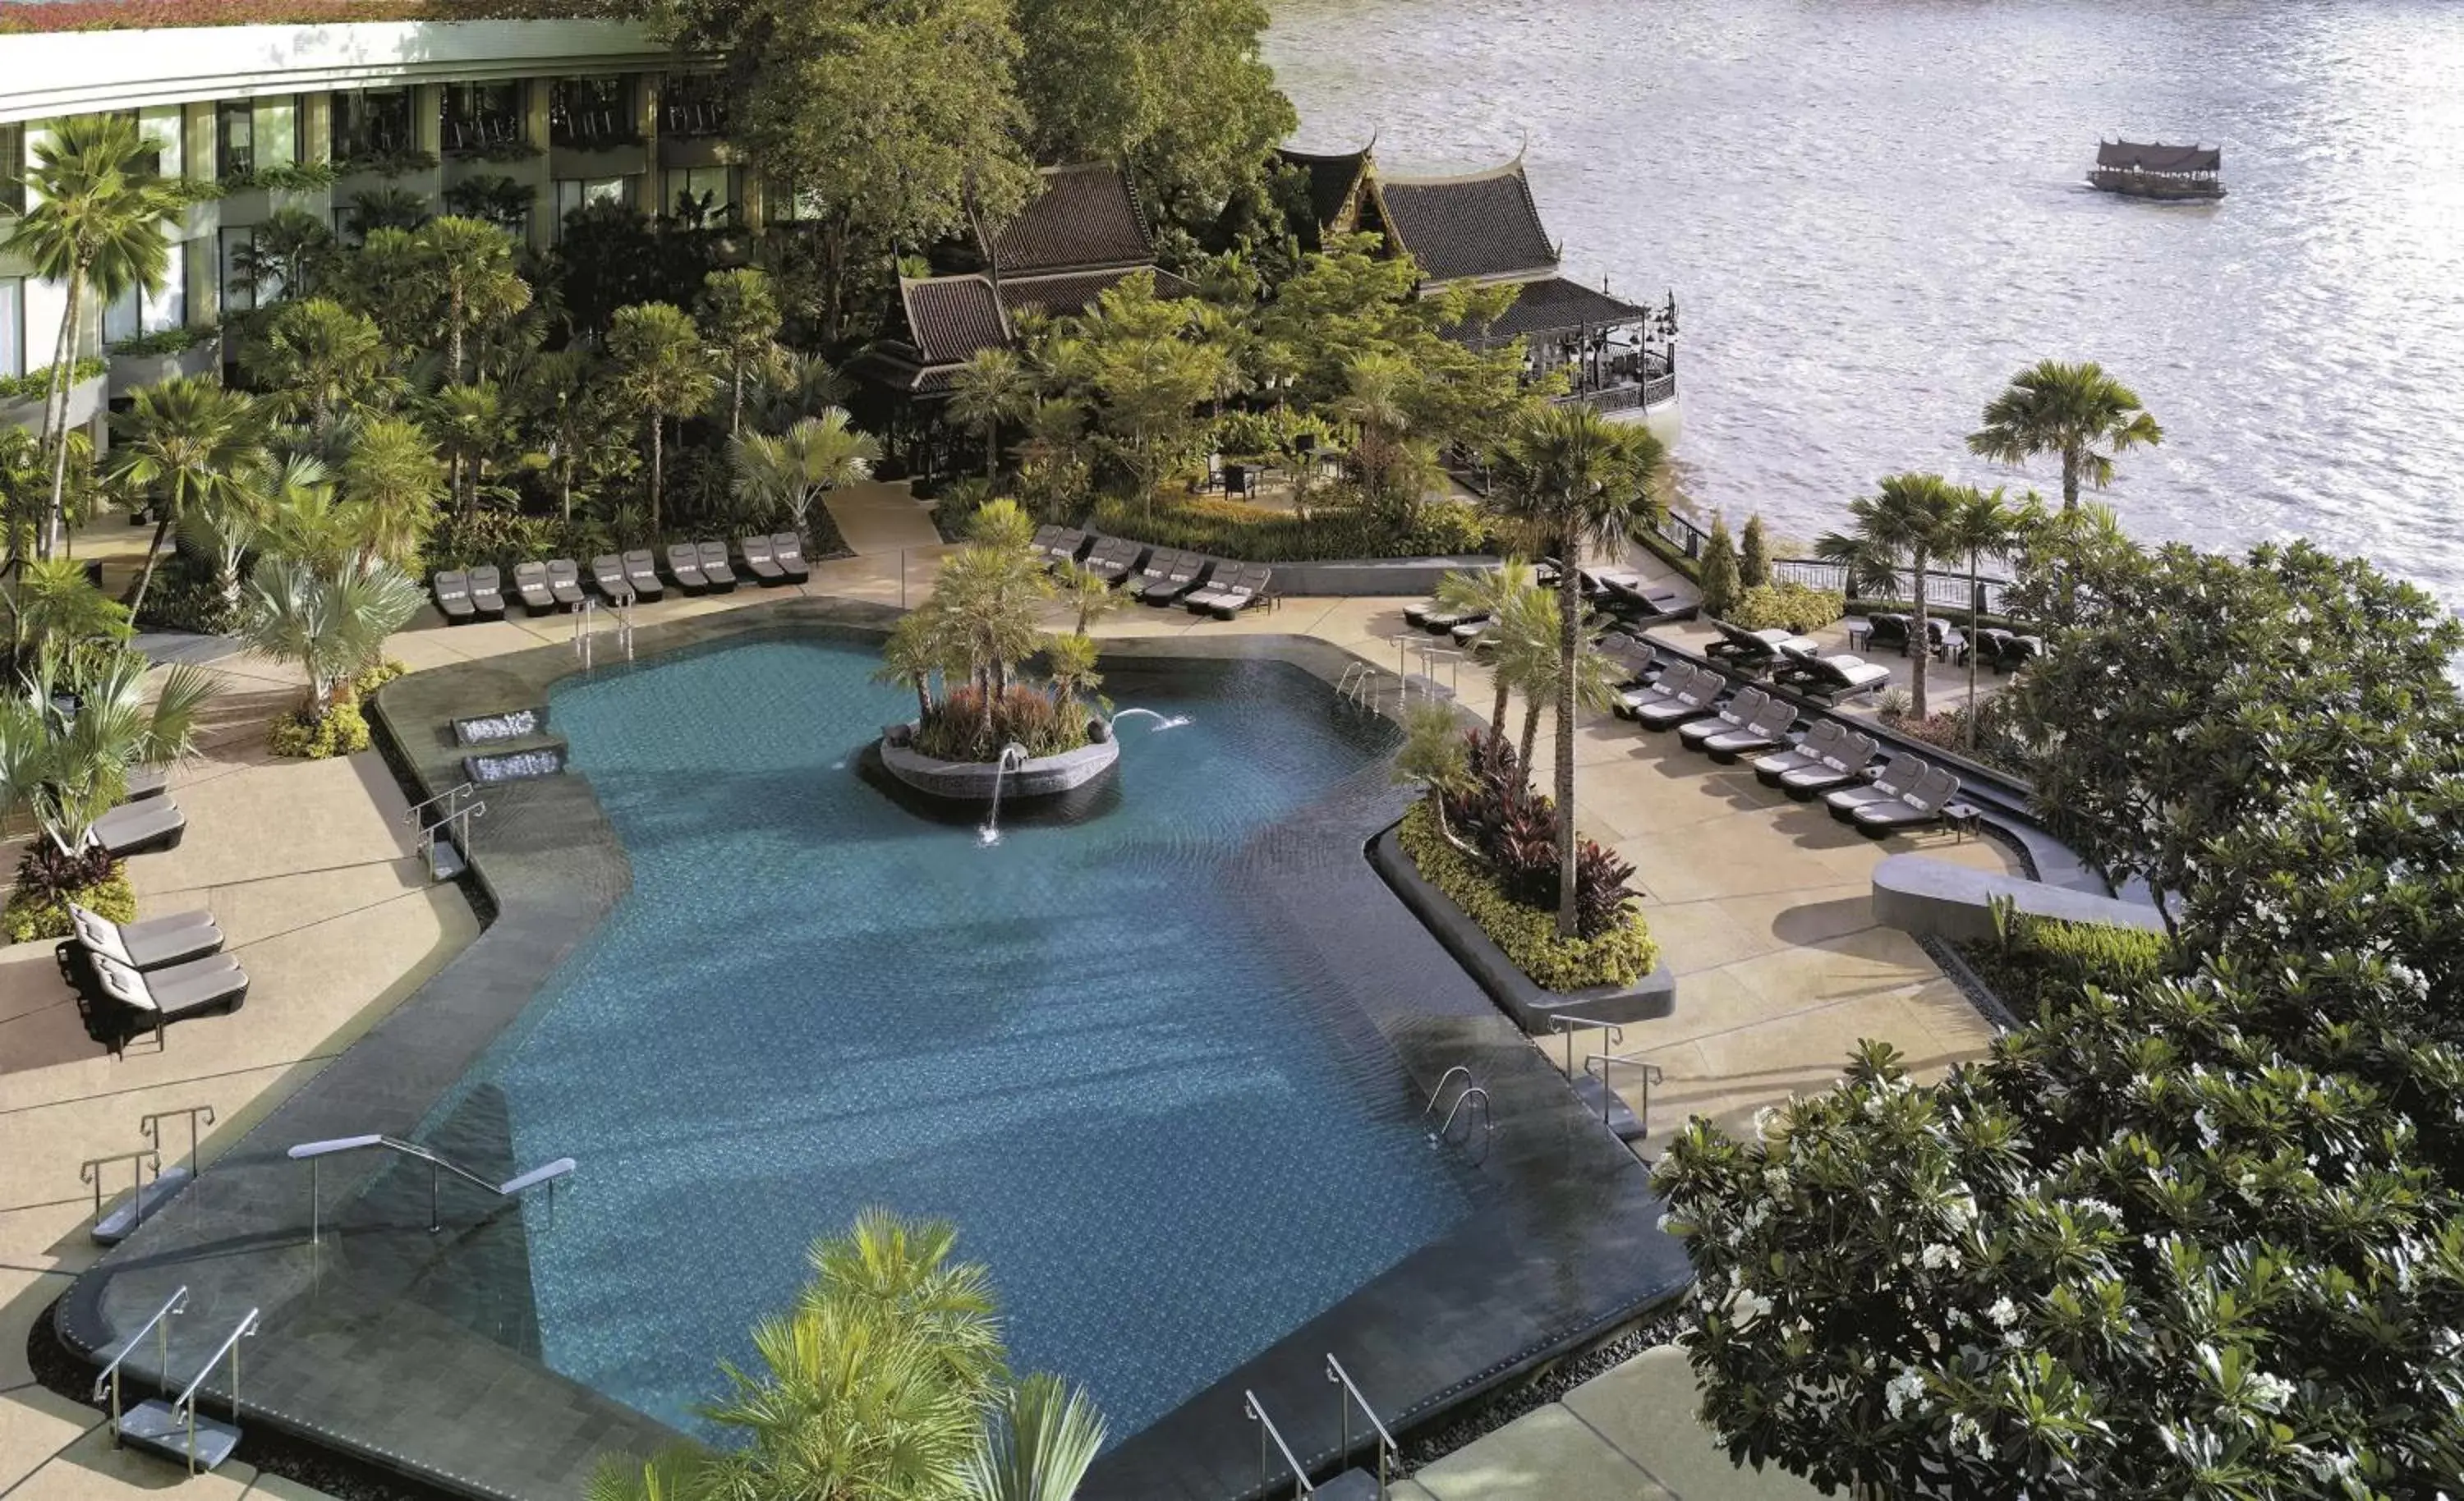 On site, Pool View in Shangri-La Bangkok